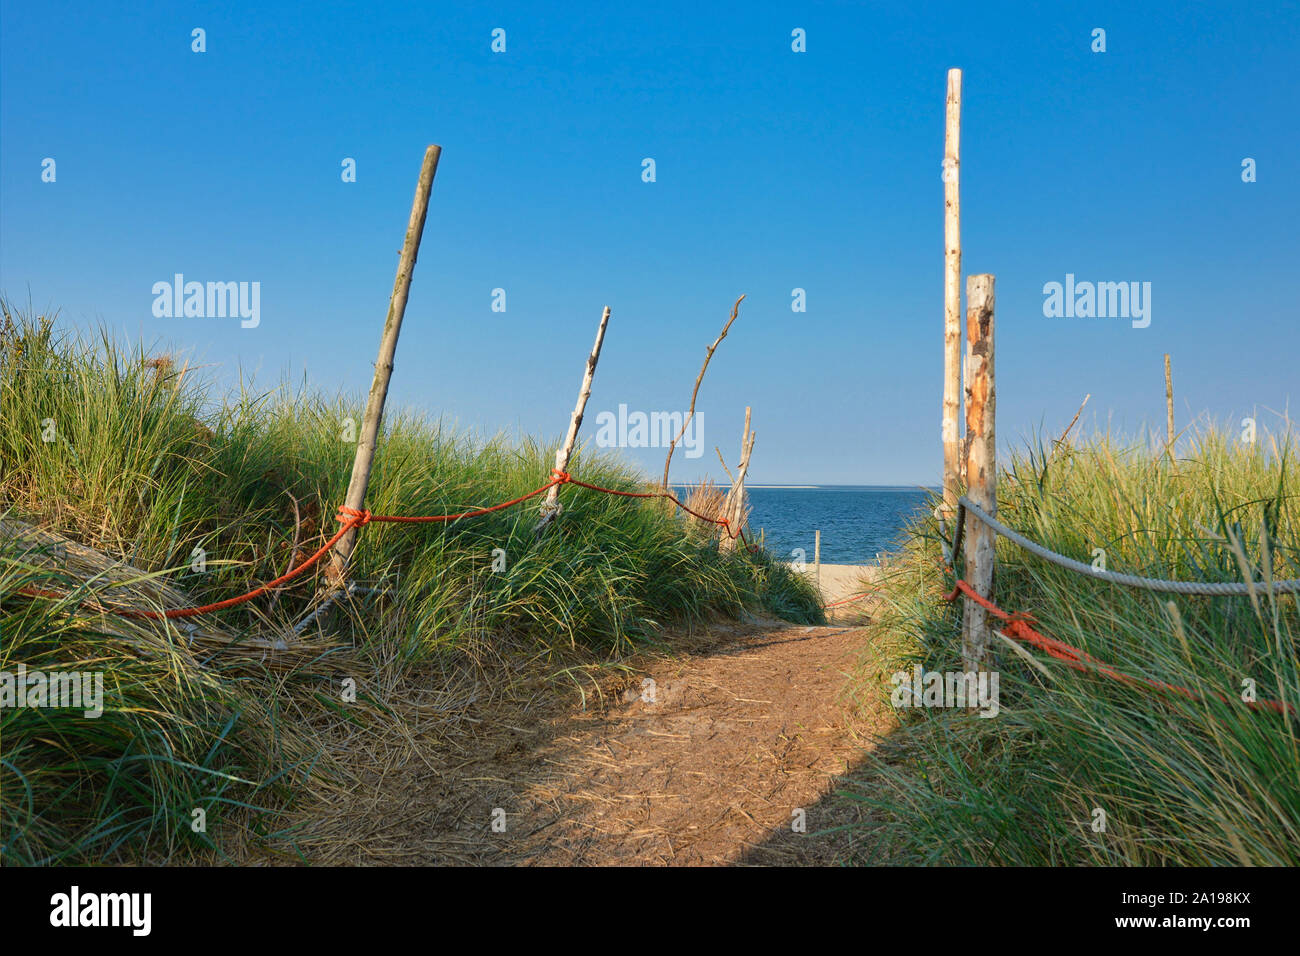 Foodpath rodeado de hierba alta y barrera con cuerda roja que conduce a la playa y el mar en el mar del Norte isla Texel en Holanda Foto de stock